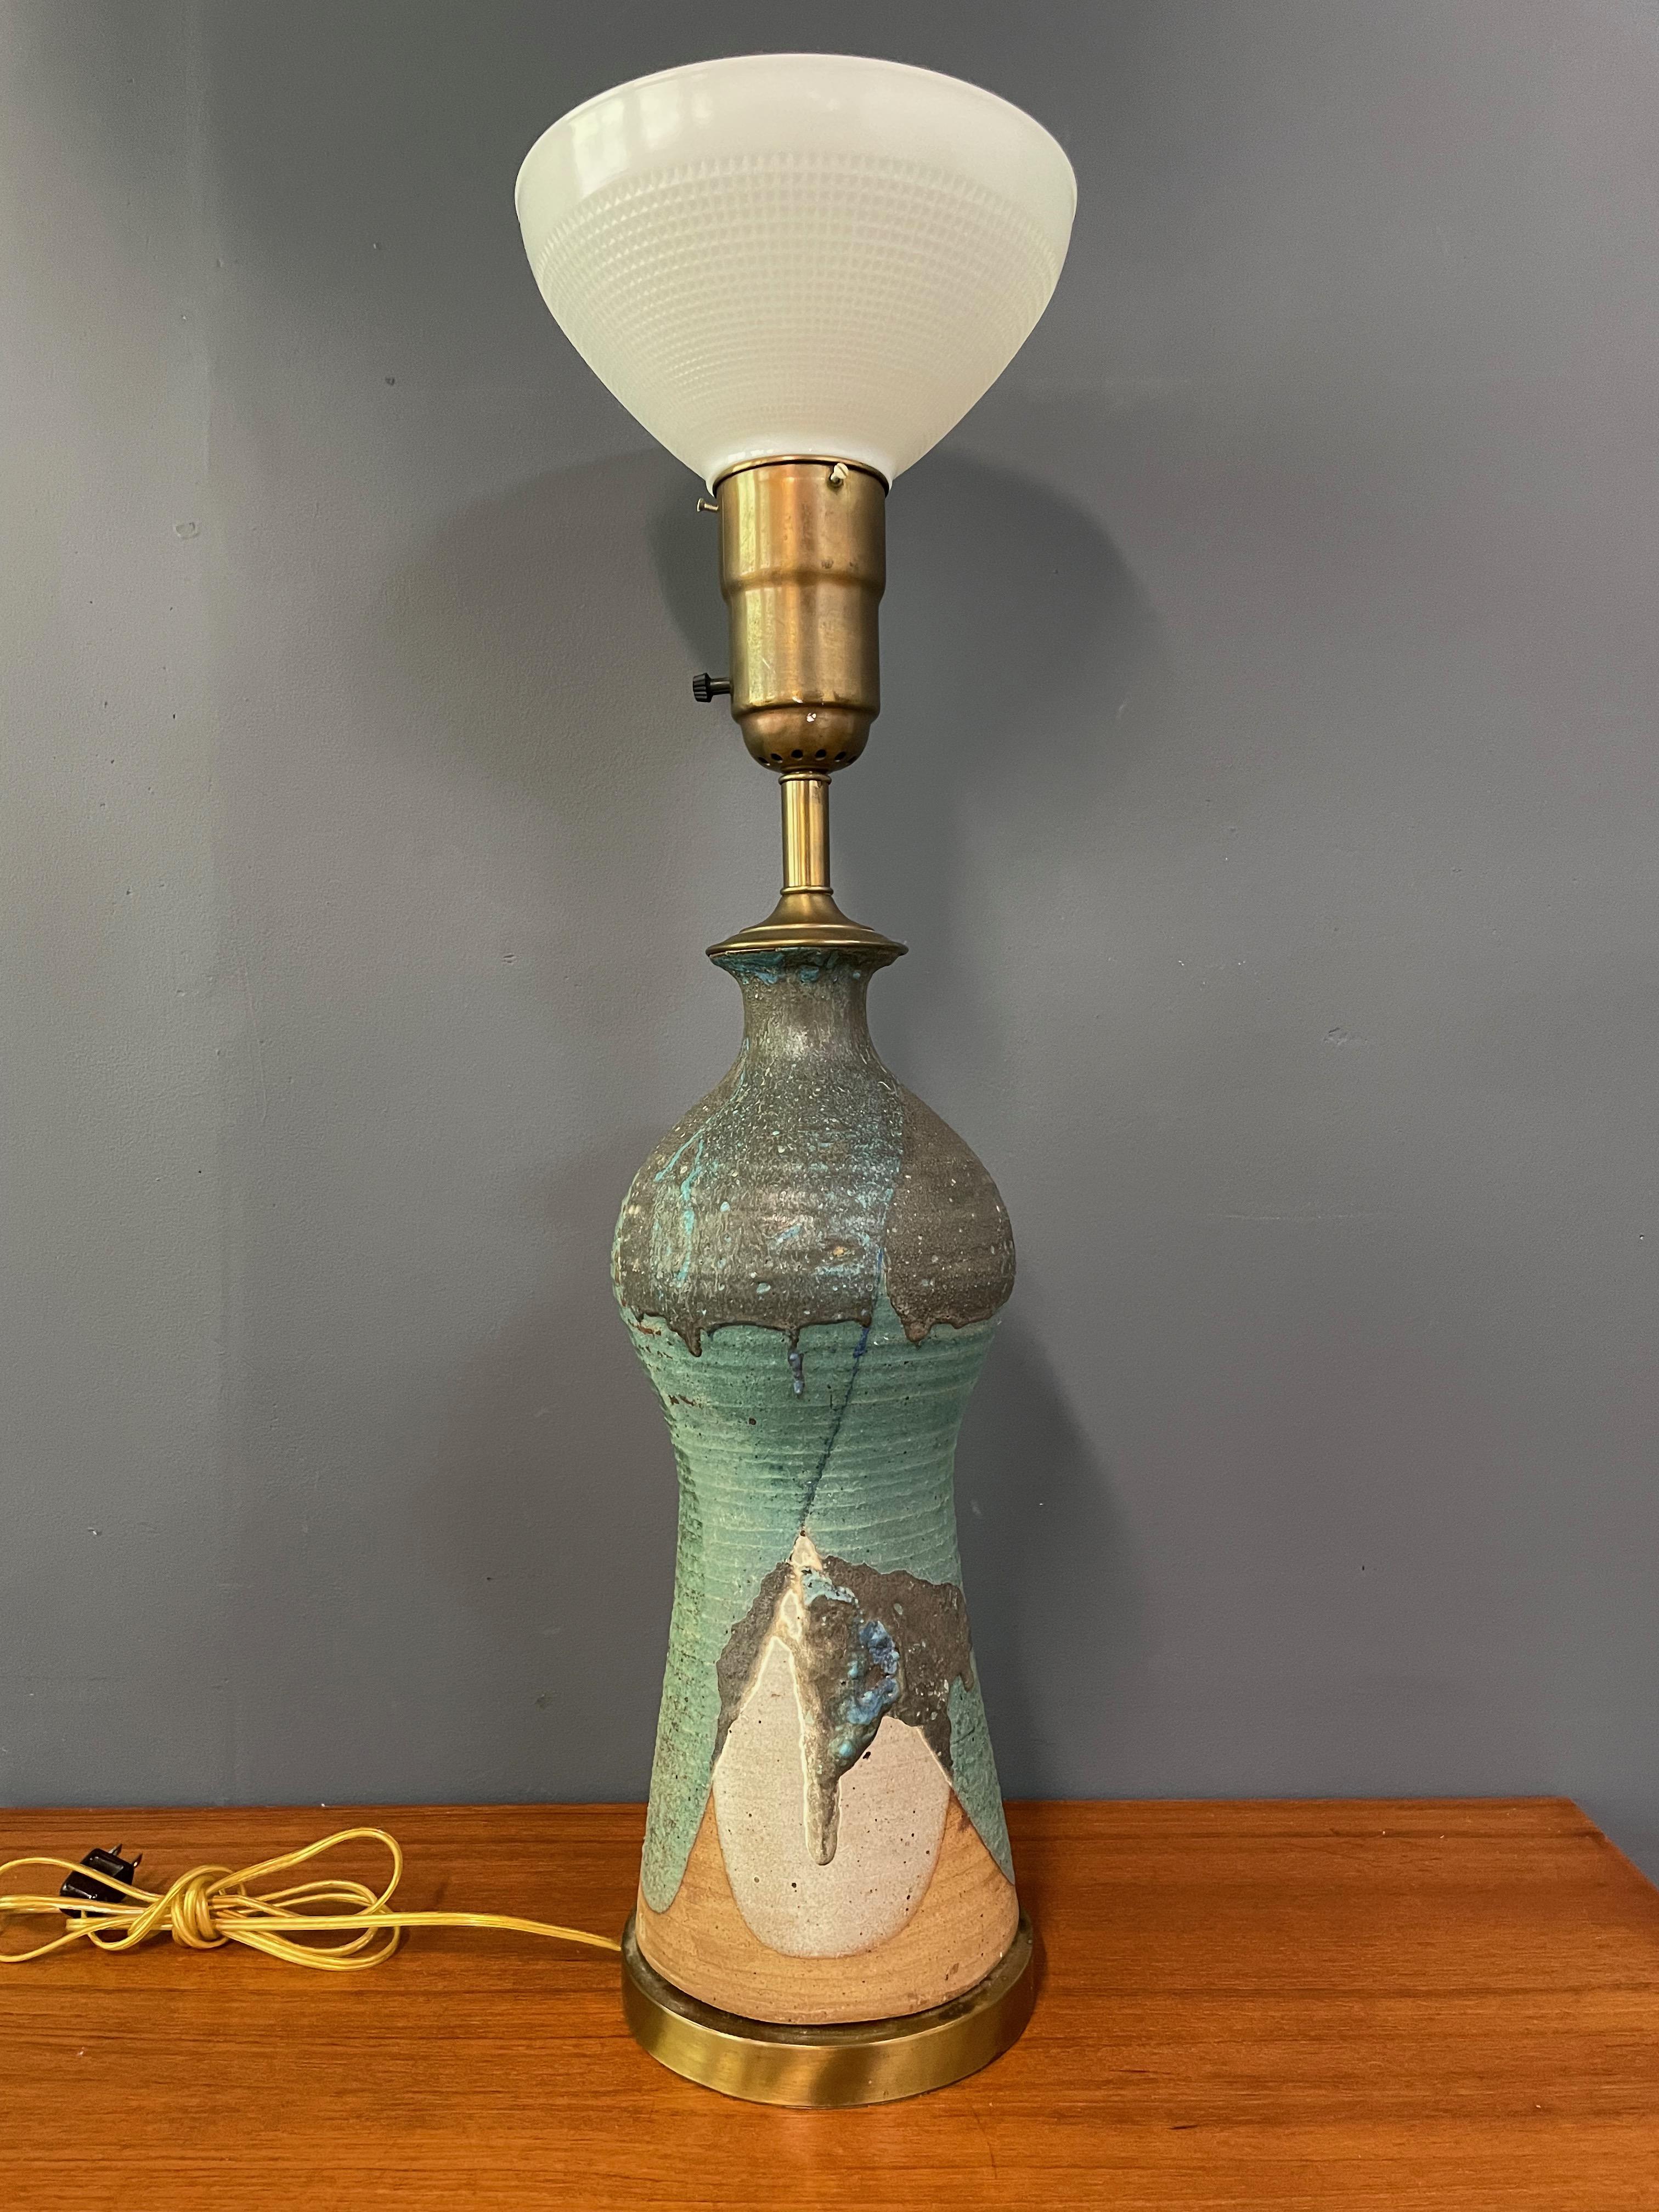 Unglaubliche, fantastisch glasierte Keramiklampe des angesehenen Keramikers Harry Holl. Diese Lampe befand sich in seiner persönlichen Sammlung. Die beeindruckende Größe dieses Stücks wurde als Lampe hergestellt, daher das Loch für die Kordel am